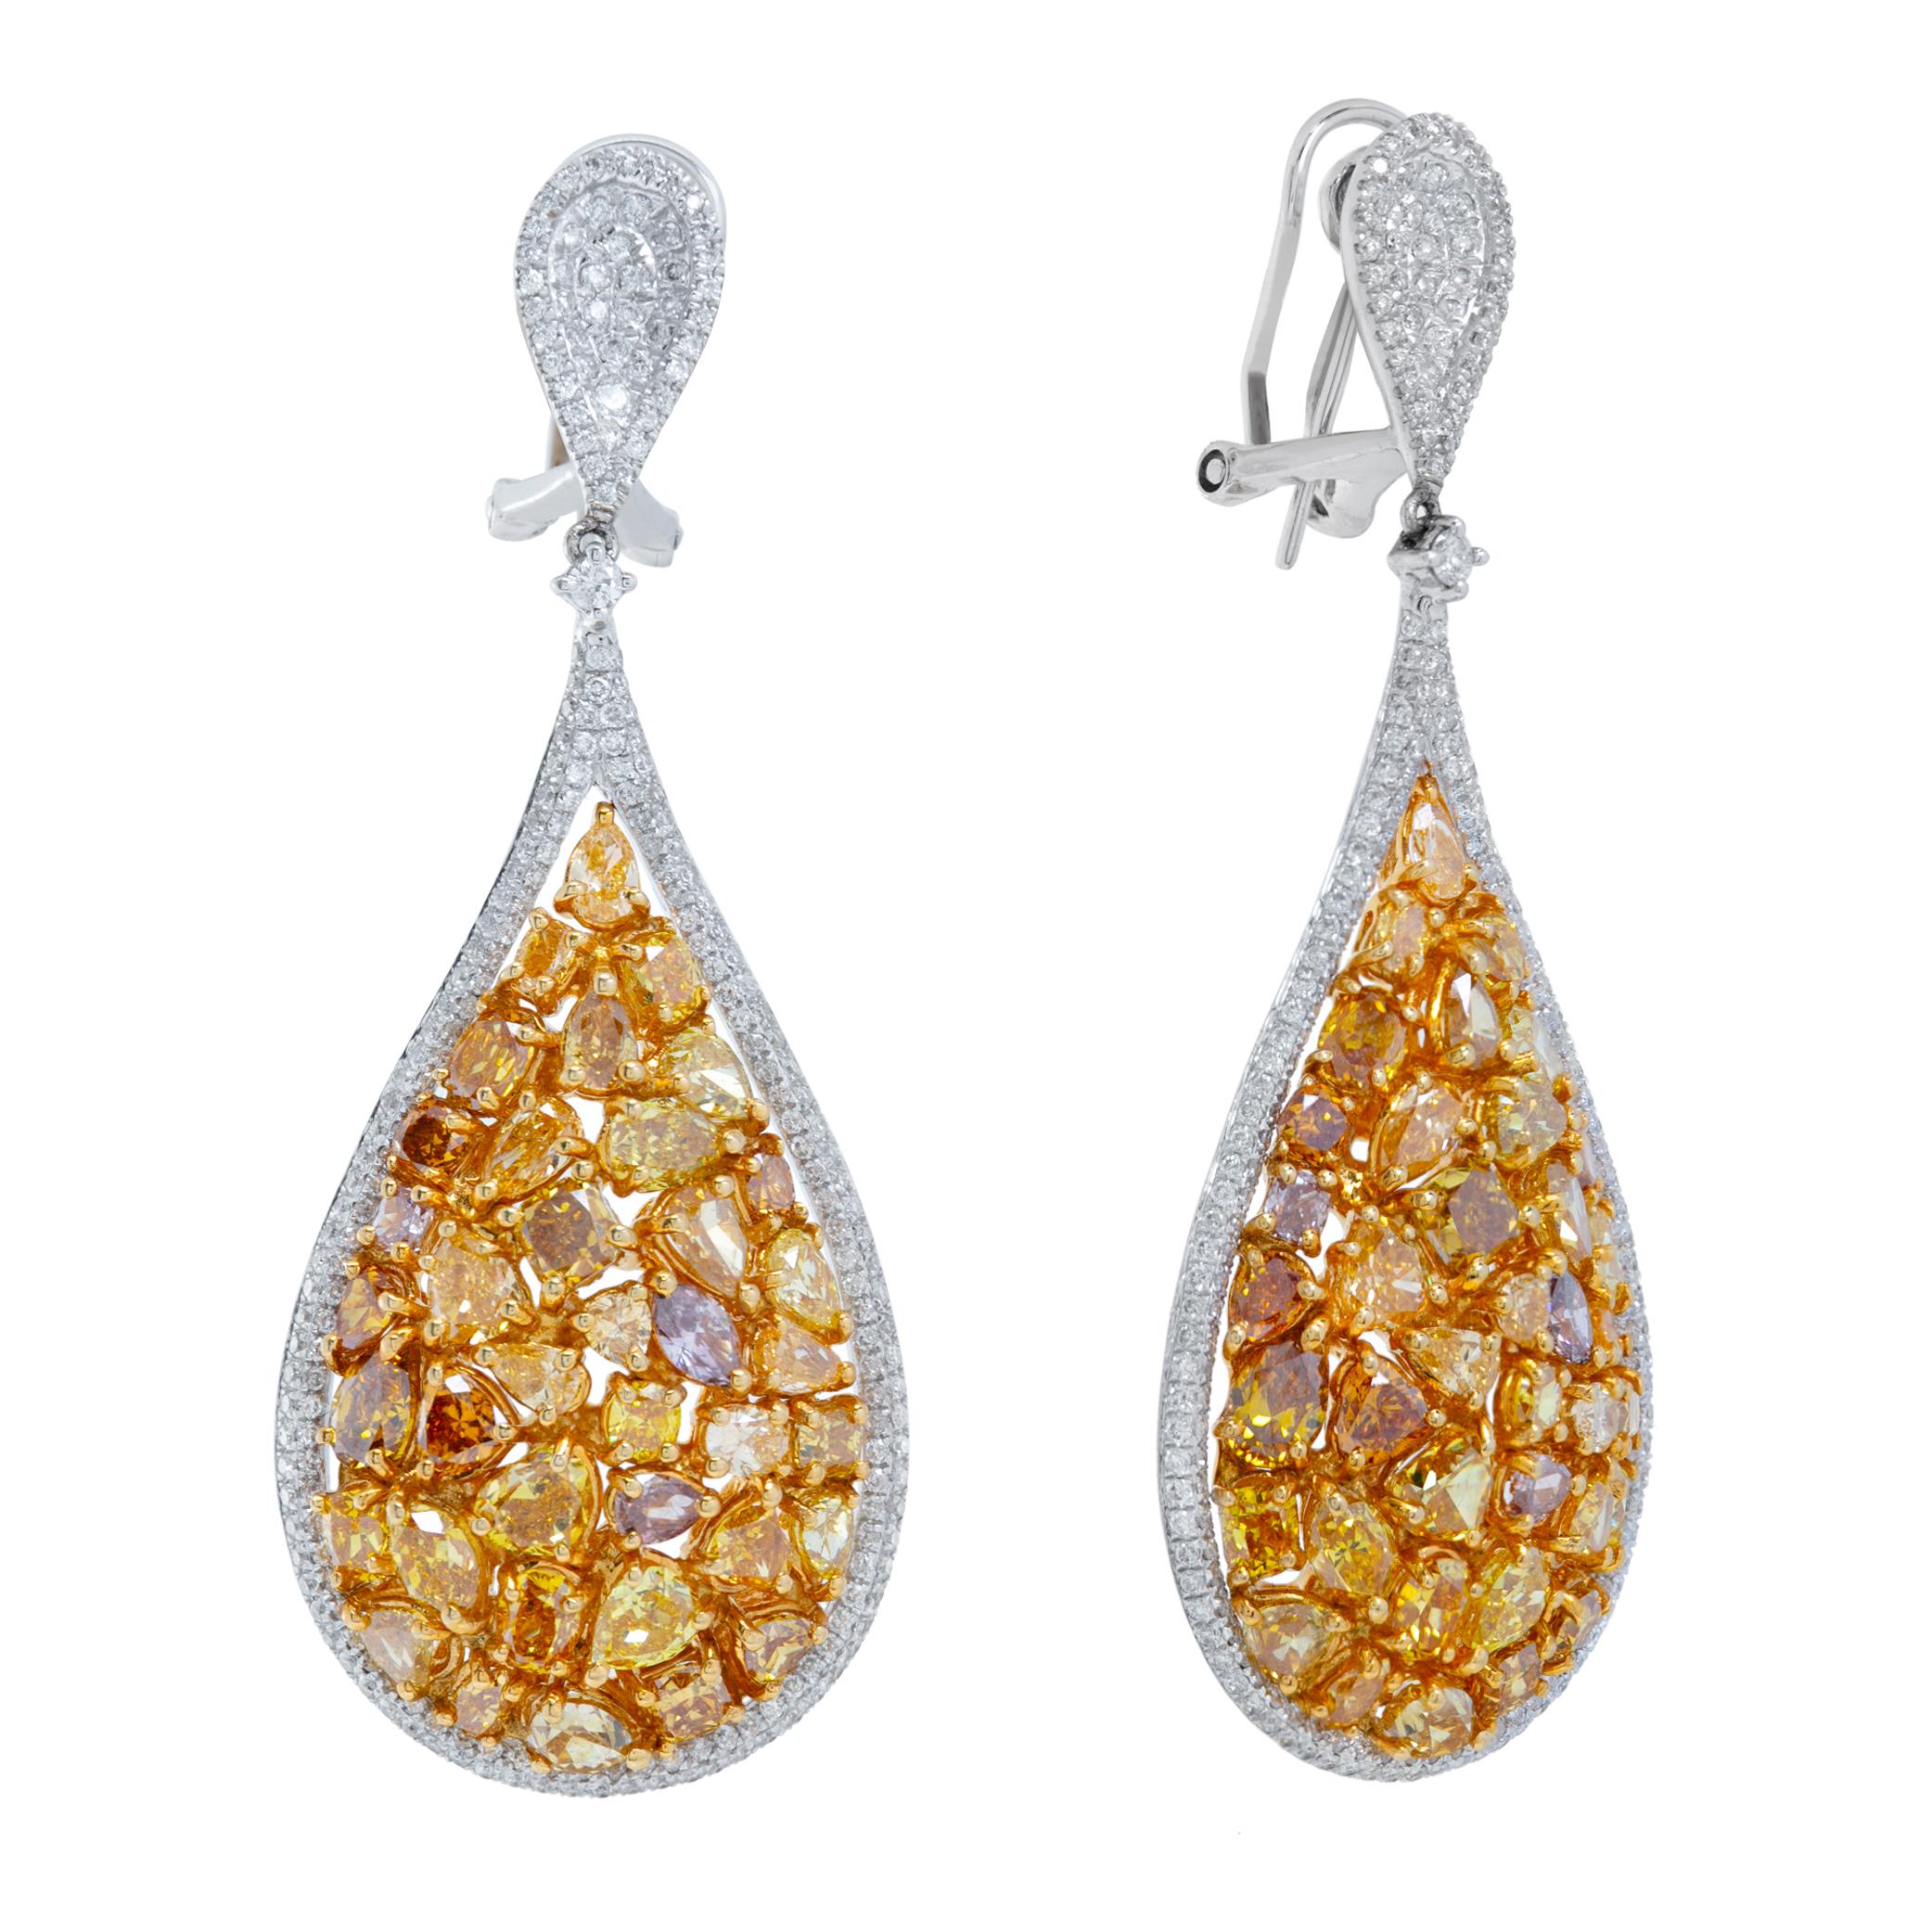 Boucles d'oreilles pendantes en or blanc et jaune 18k, composées de diamants jaunes brillants de taille ovale, poire et coussin (10,45 carats) et de diamants blancs ronds de taille brillante. Les diamants brillants de taille ovale, poire et coussin